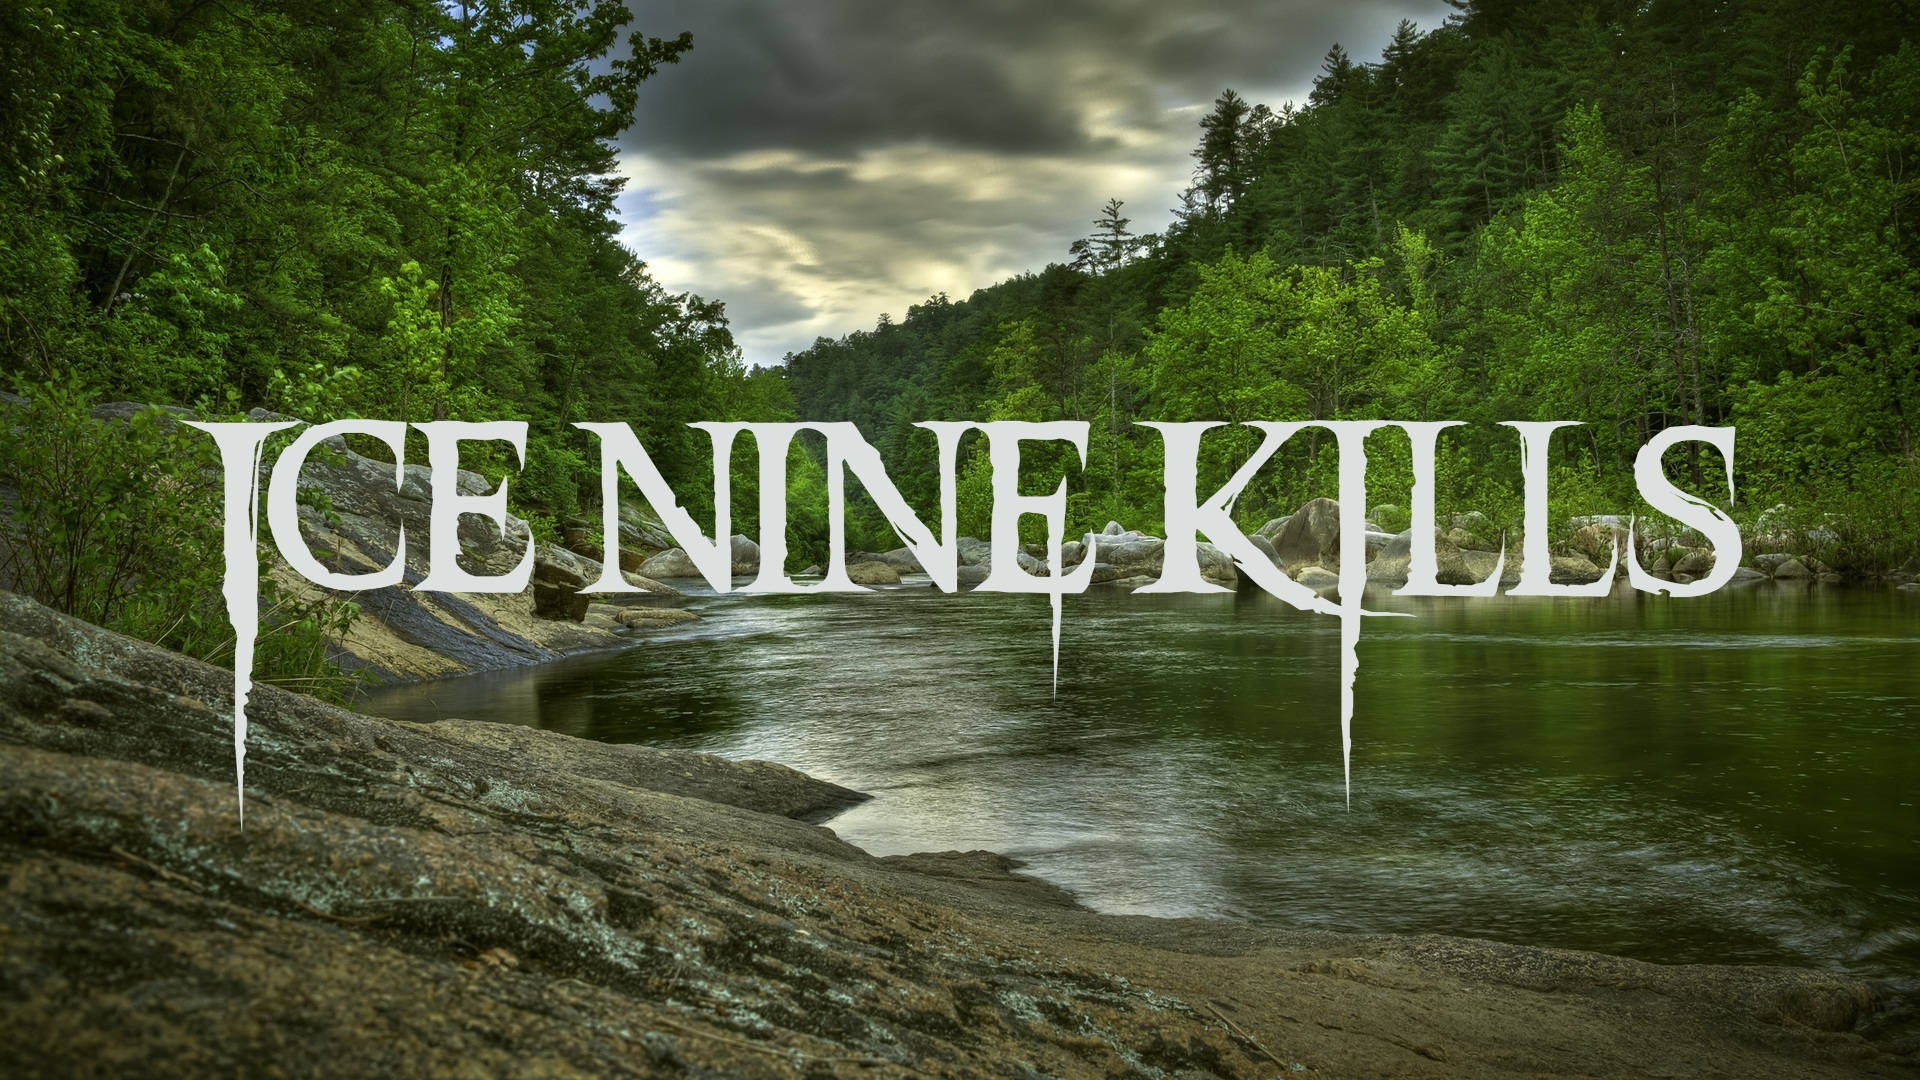 Ice Nine Kills Band Name Wallpaper